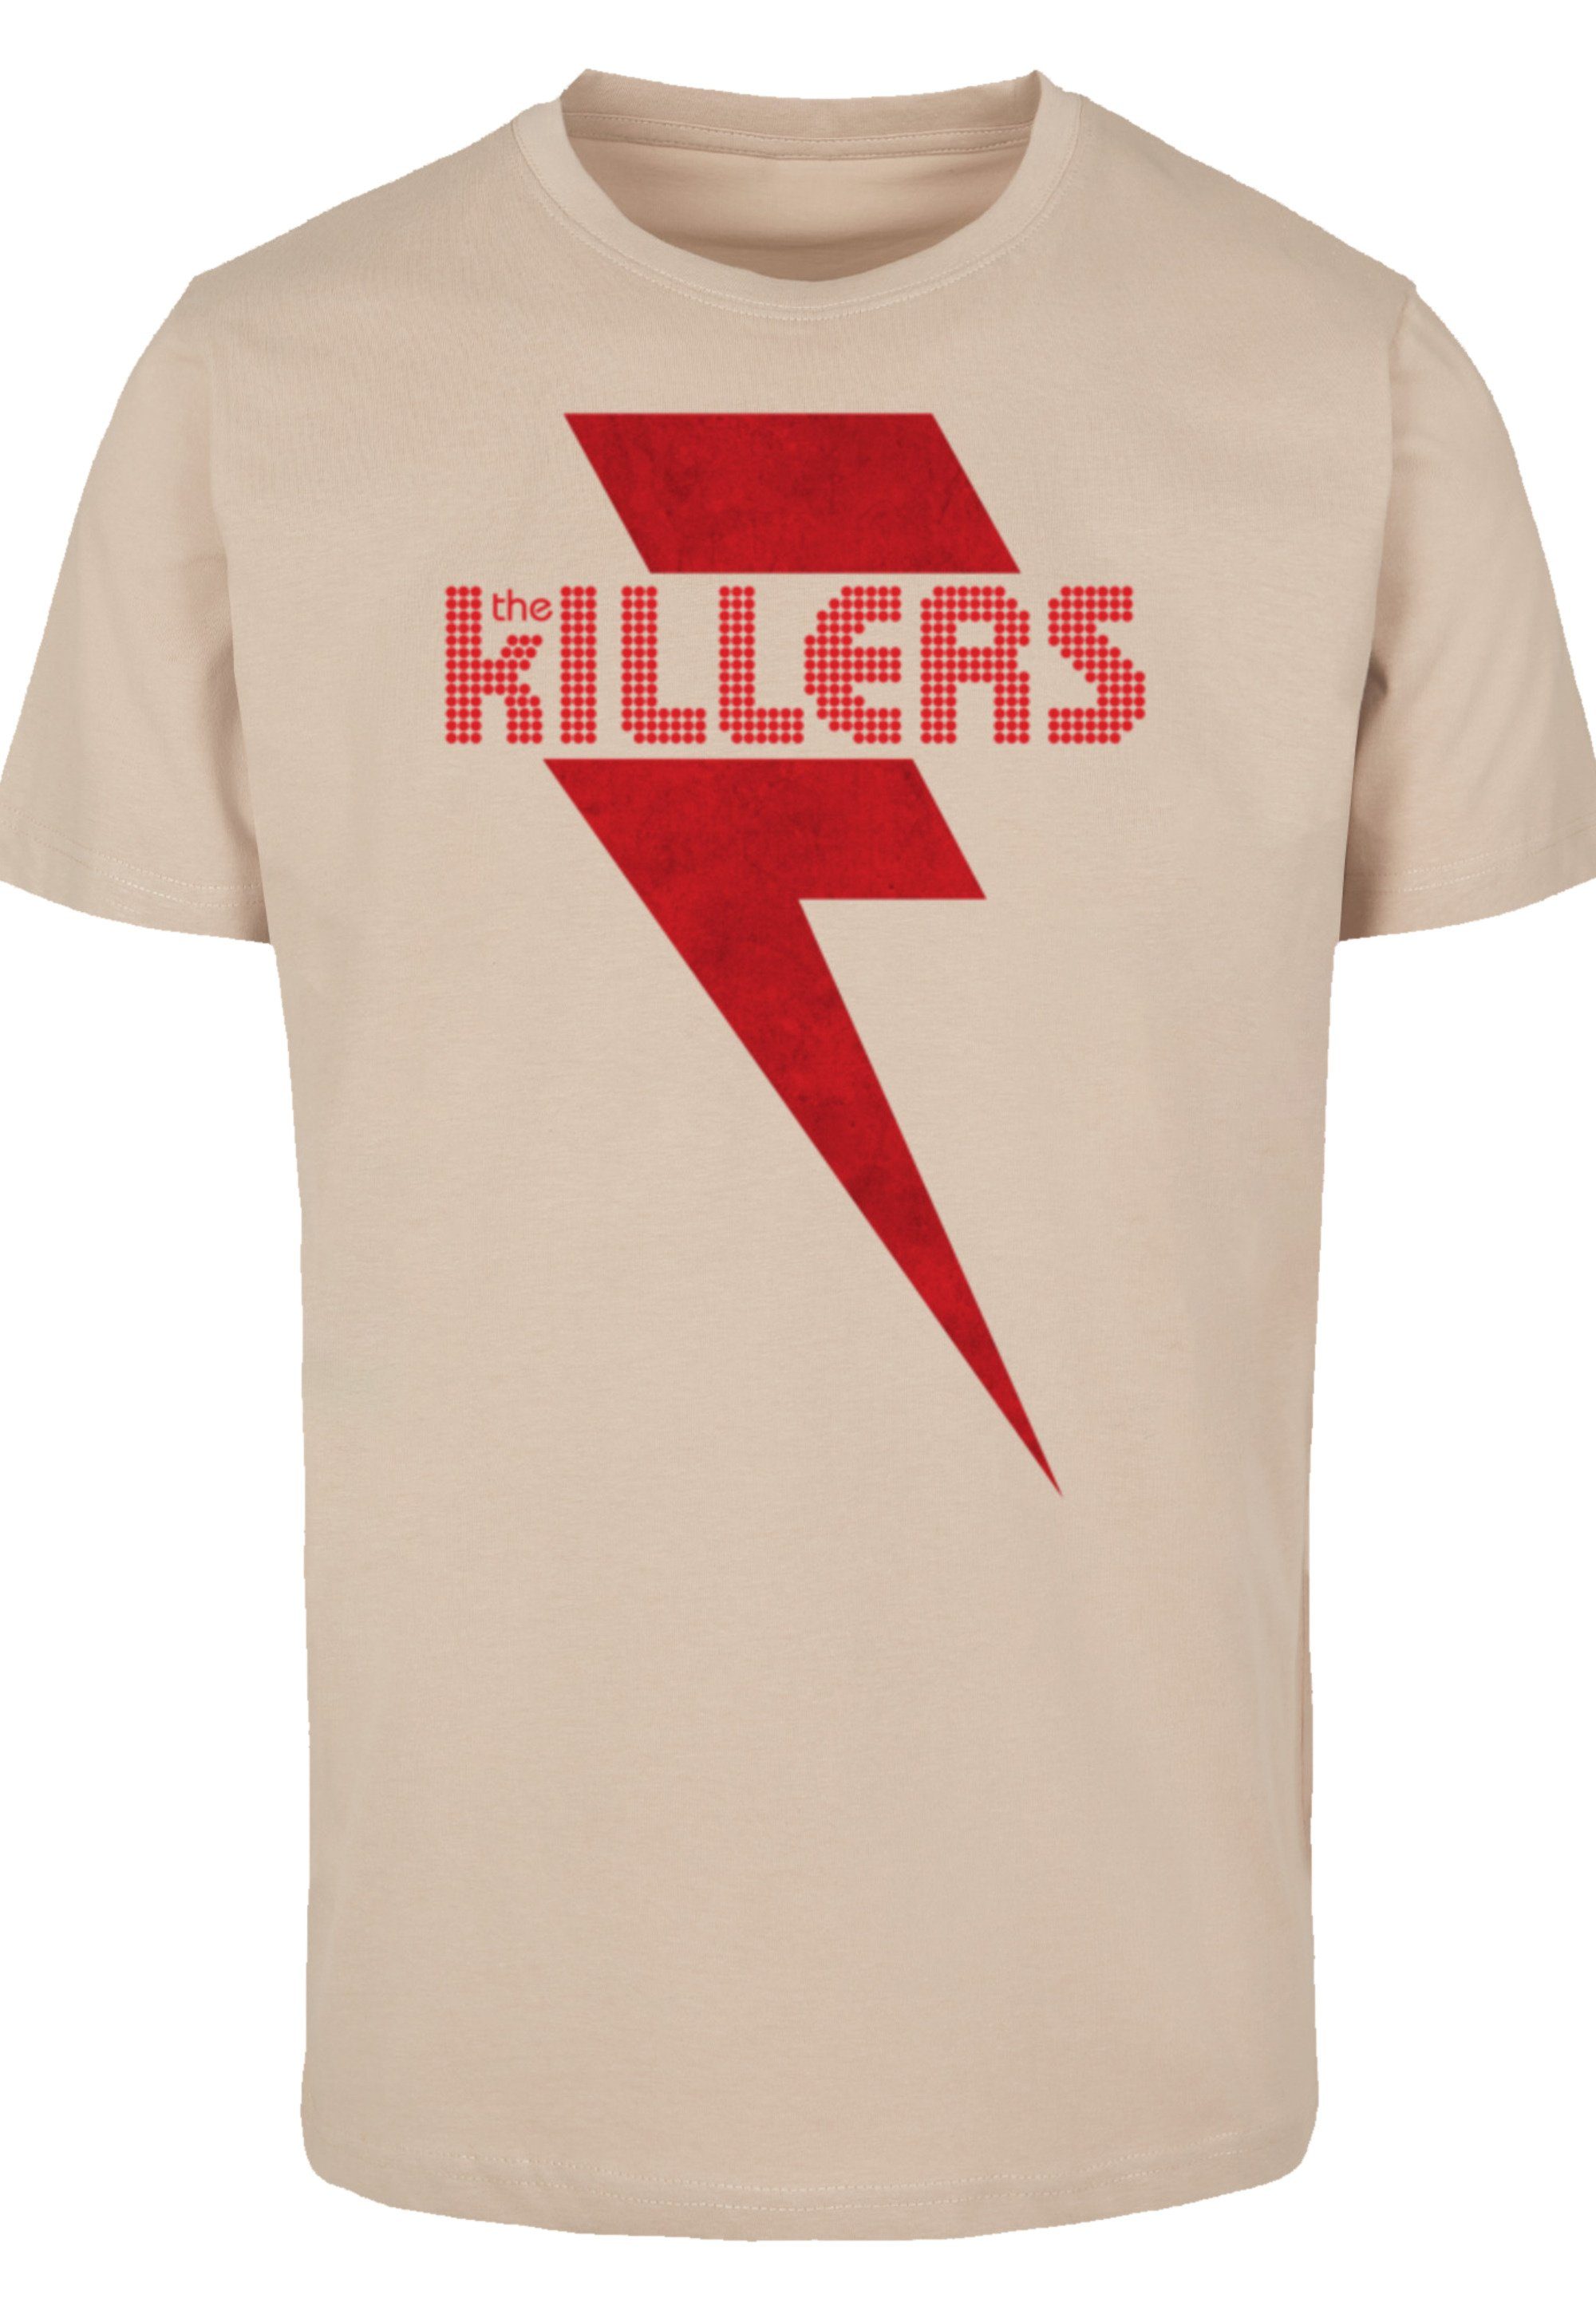 F4NT4STIC T-Shirt The Killers Red Bolt Print, Sehr weicher Baumwollstoff  mit hohem Tragekomfort